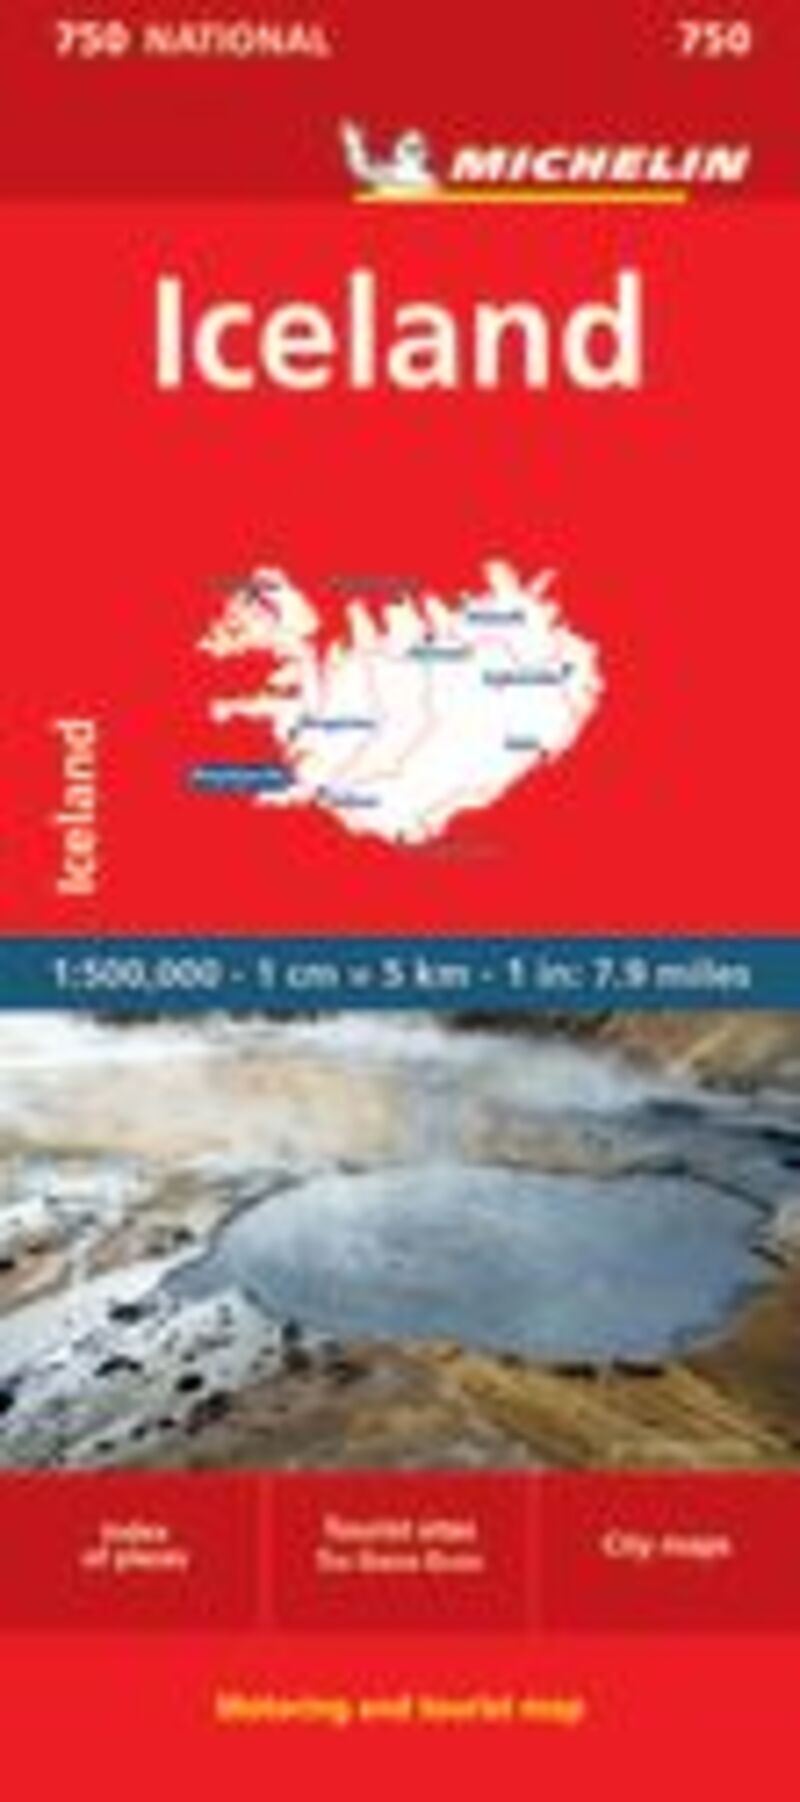 MAPA NATIONAL ICELAND 11750